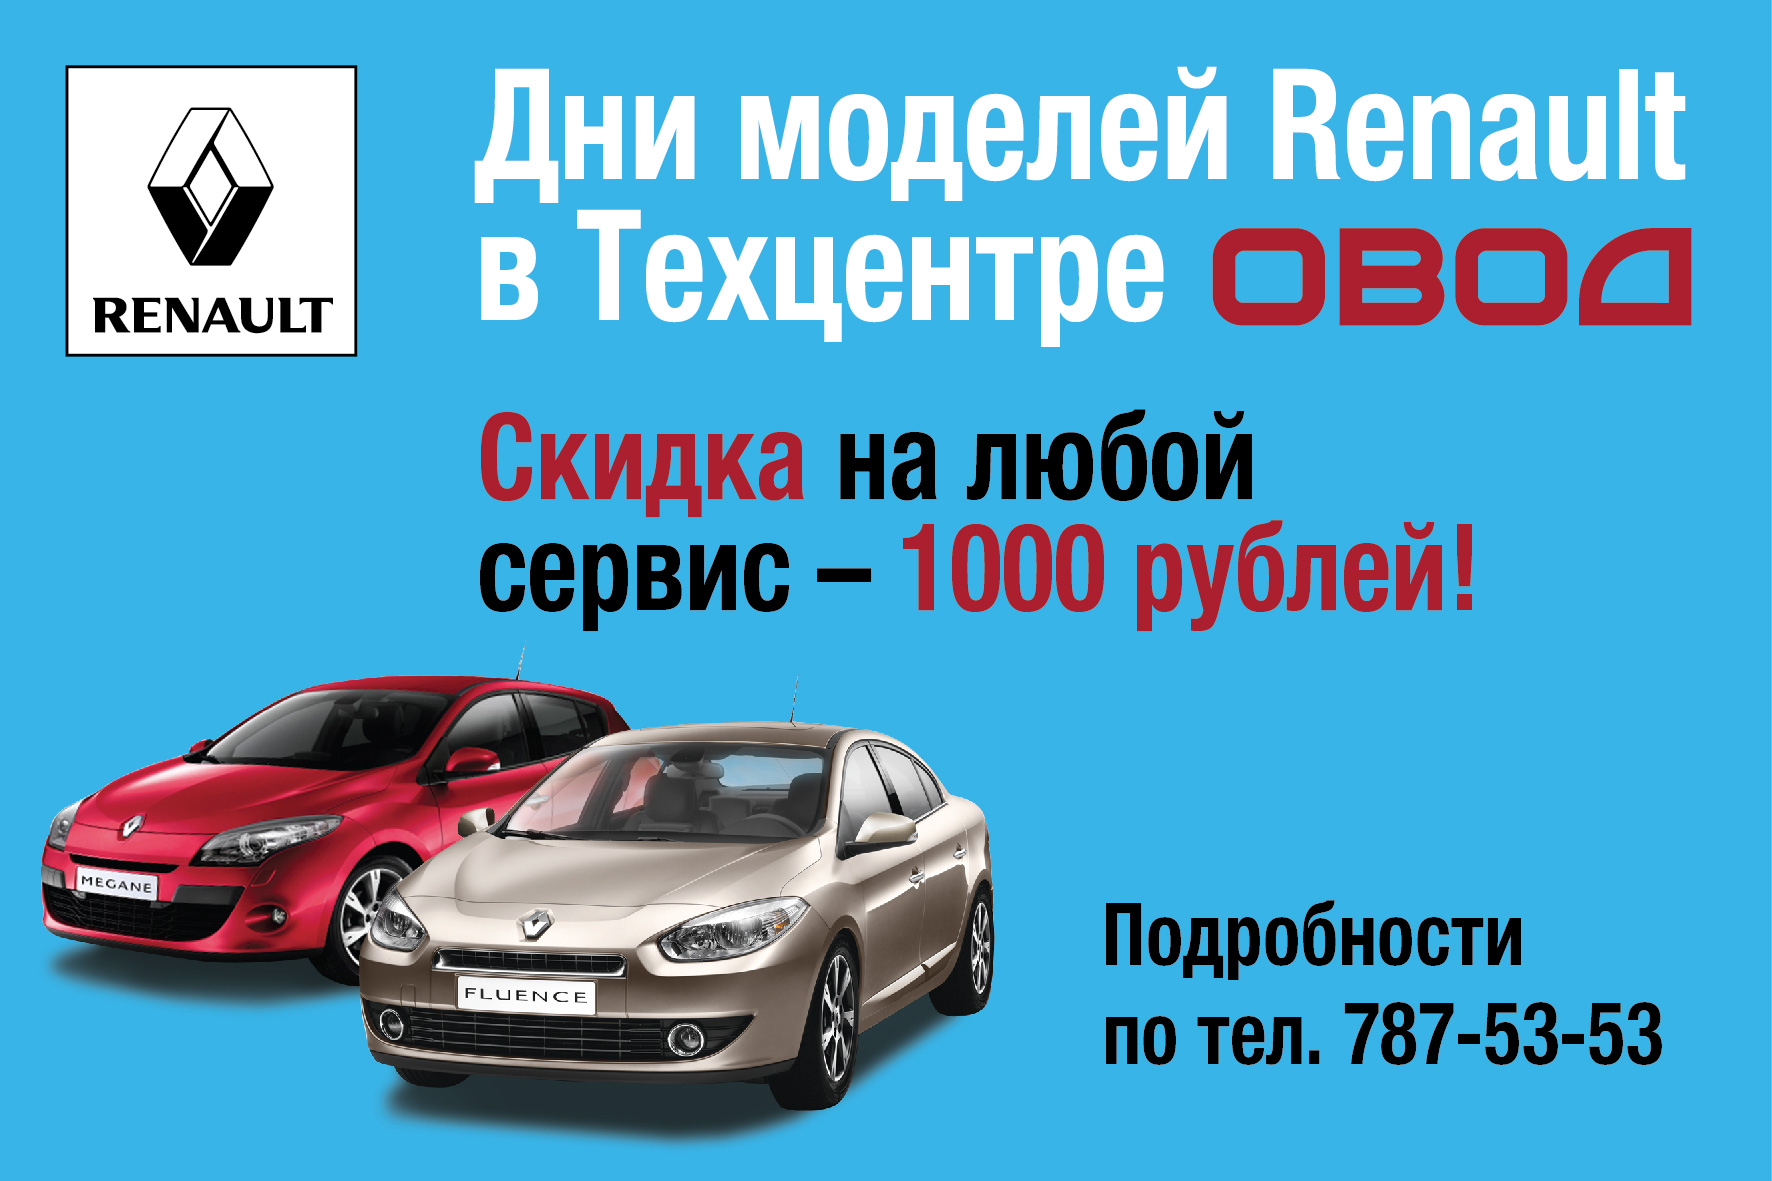 Дни моделей Renault в Техцентре ОВОД - скидка 1000 рублей на любую сервисную работу!